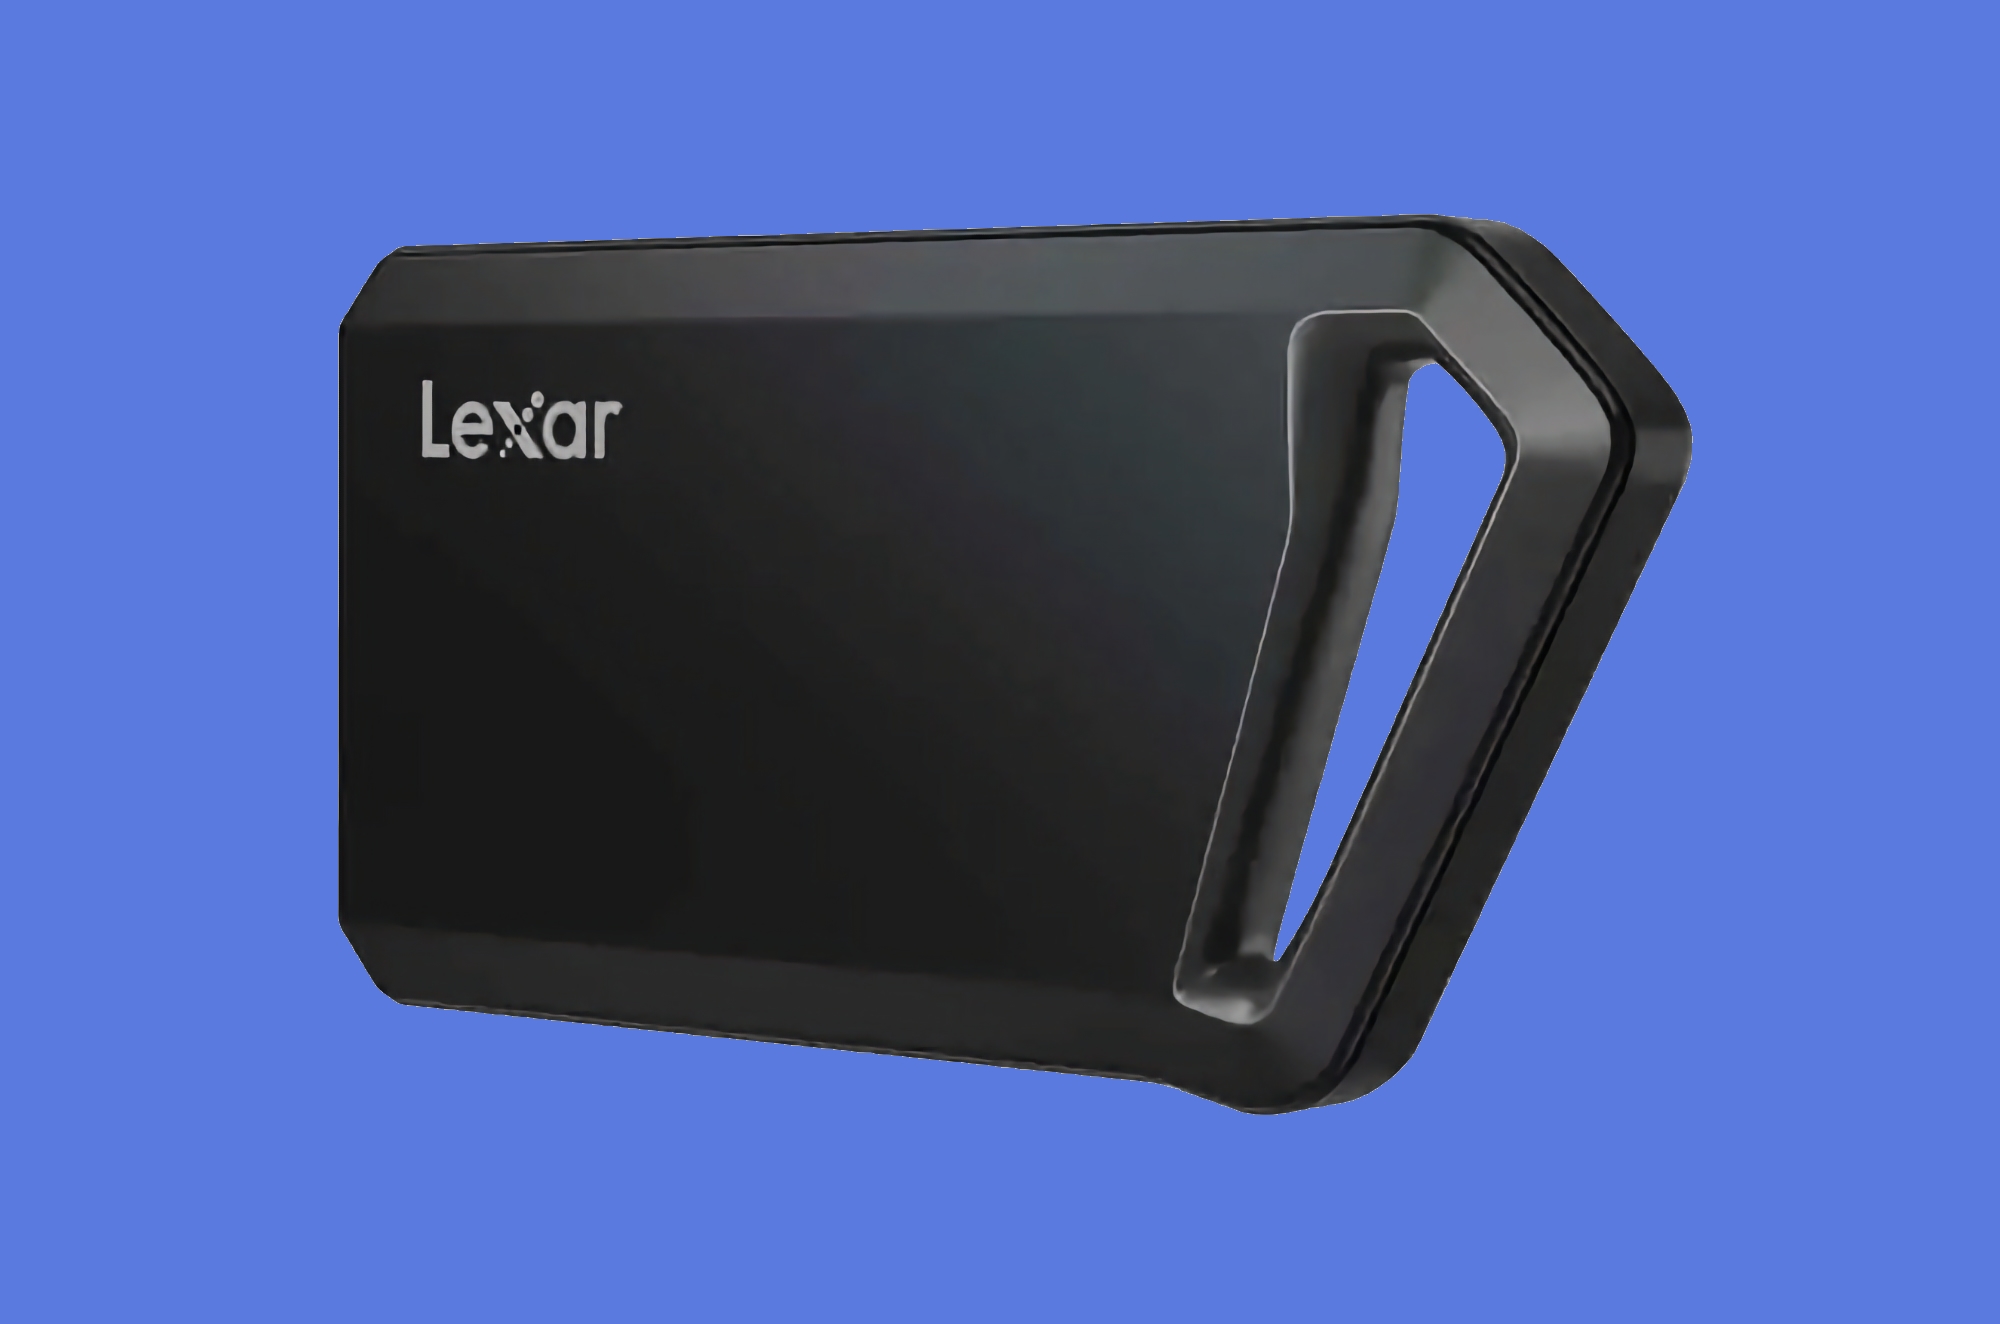 Lexar har introdusert Professional SL600 Portable SSD med støtsikkert deksel, 1-4 TB kapasitet og priser fra 89 dollar.